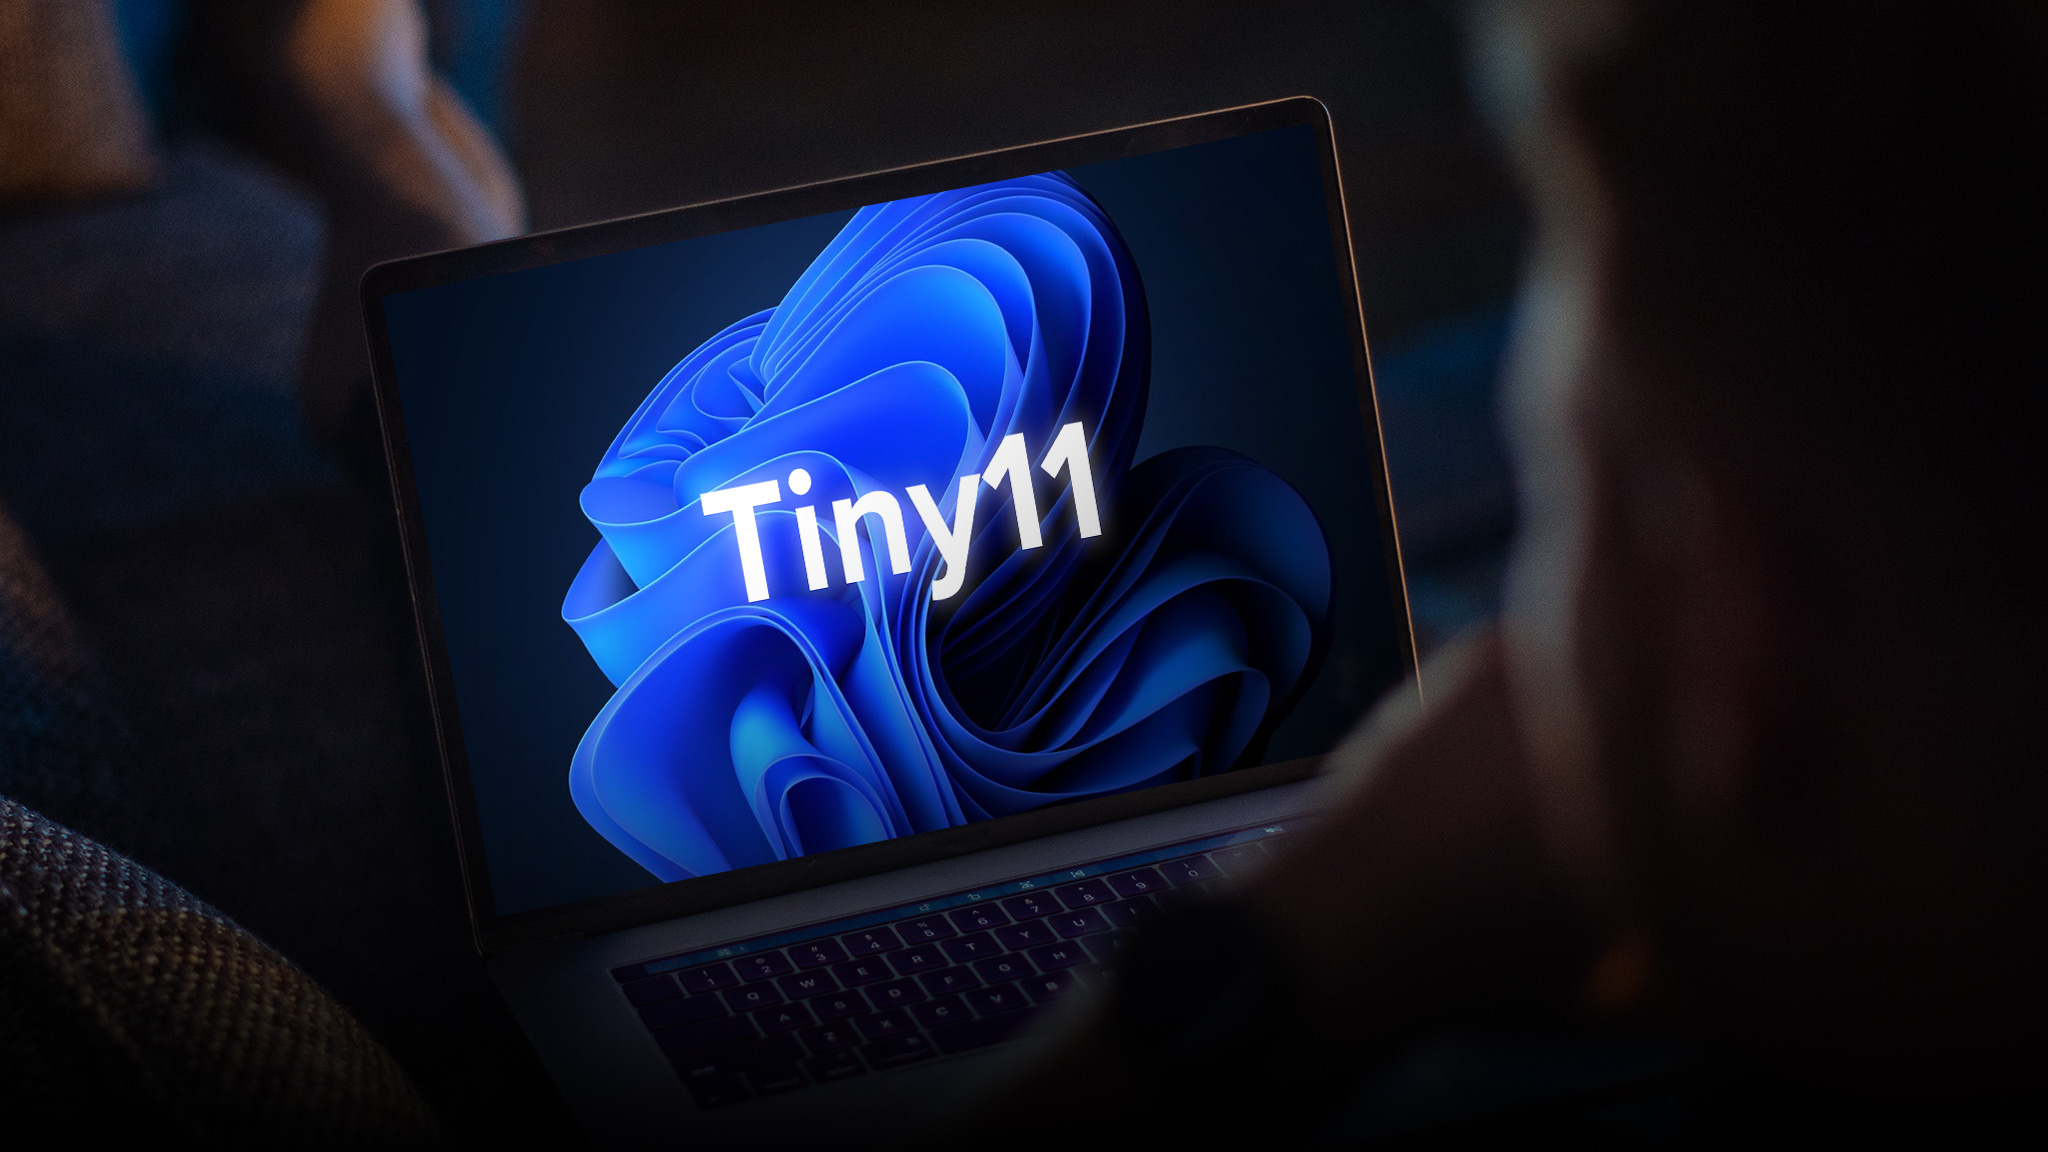 Tiny11: Darum sollten Sie das Winz-Windows nicht installieren